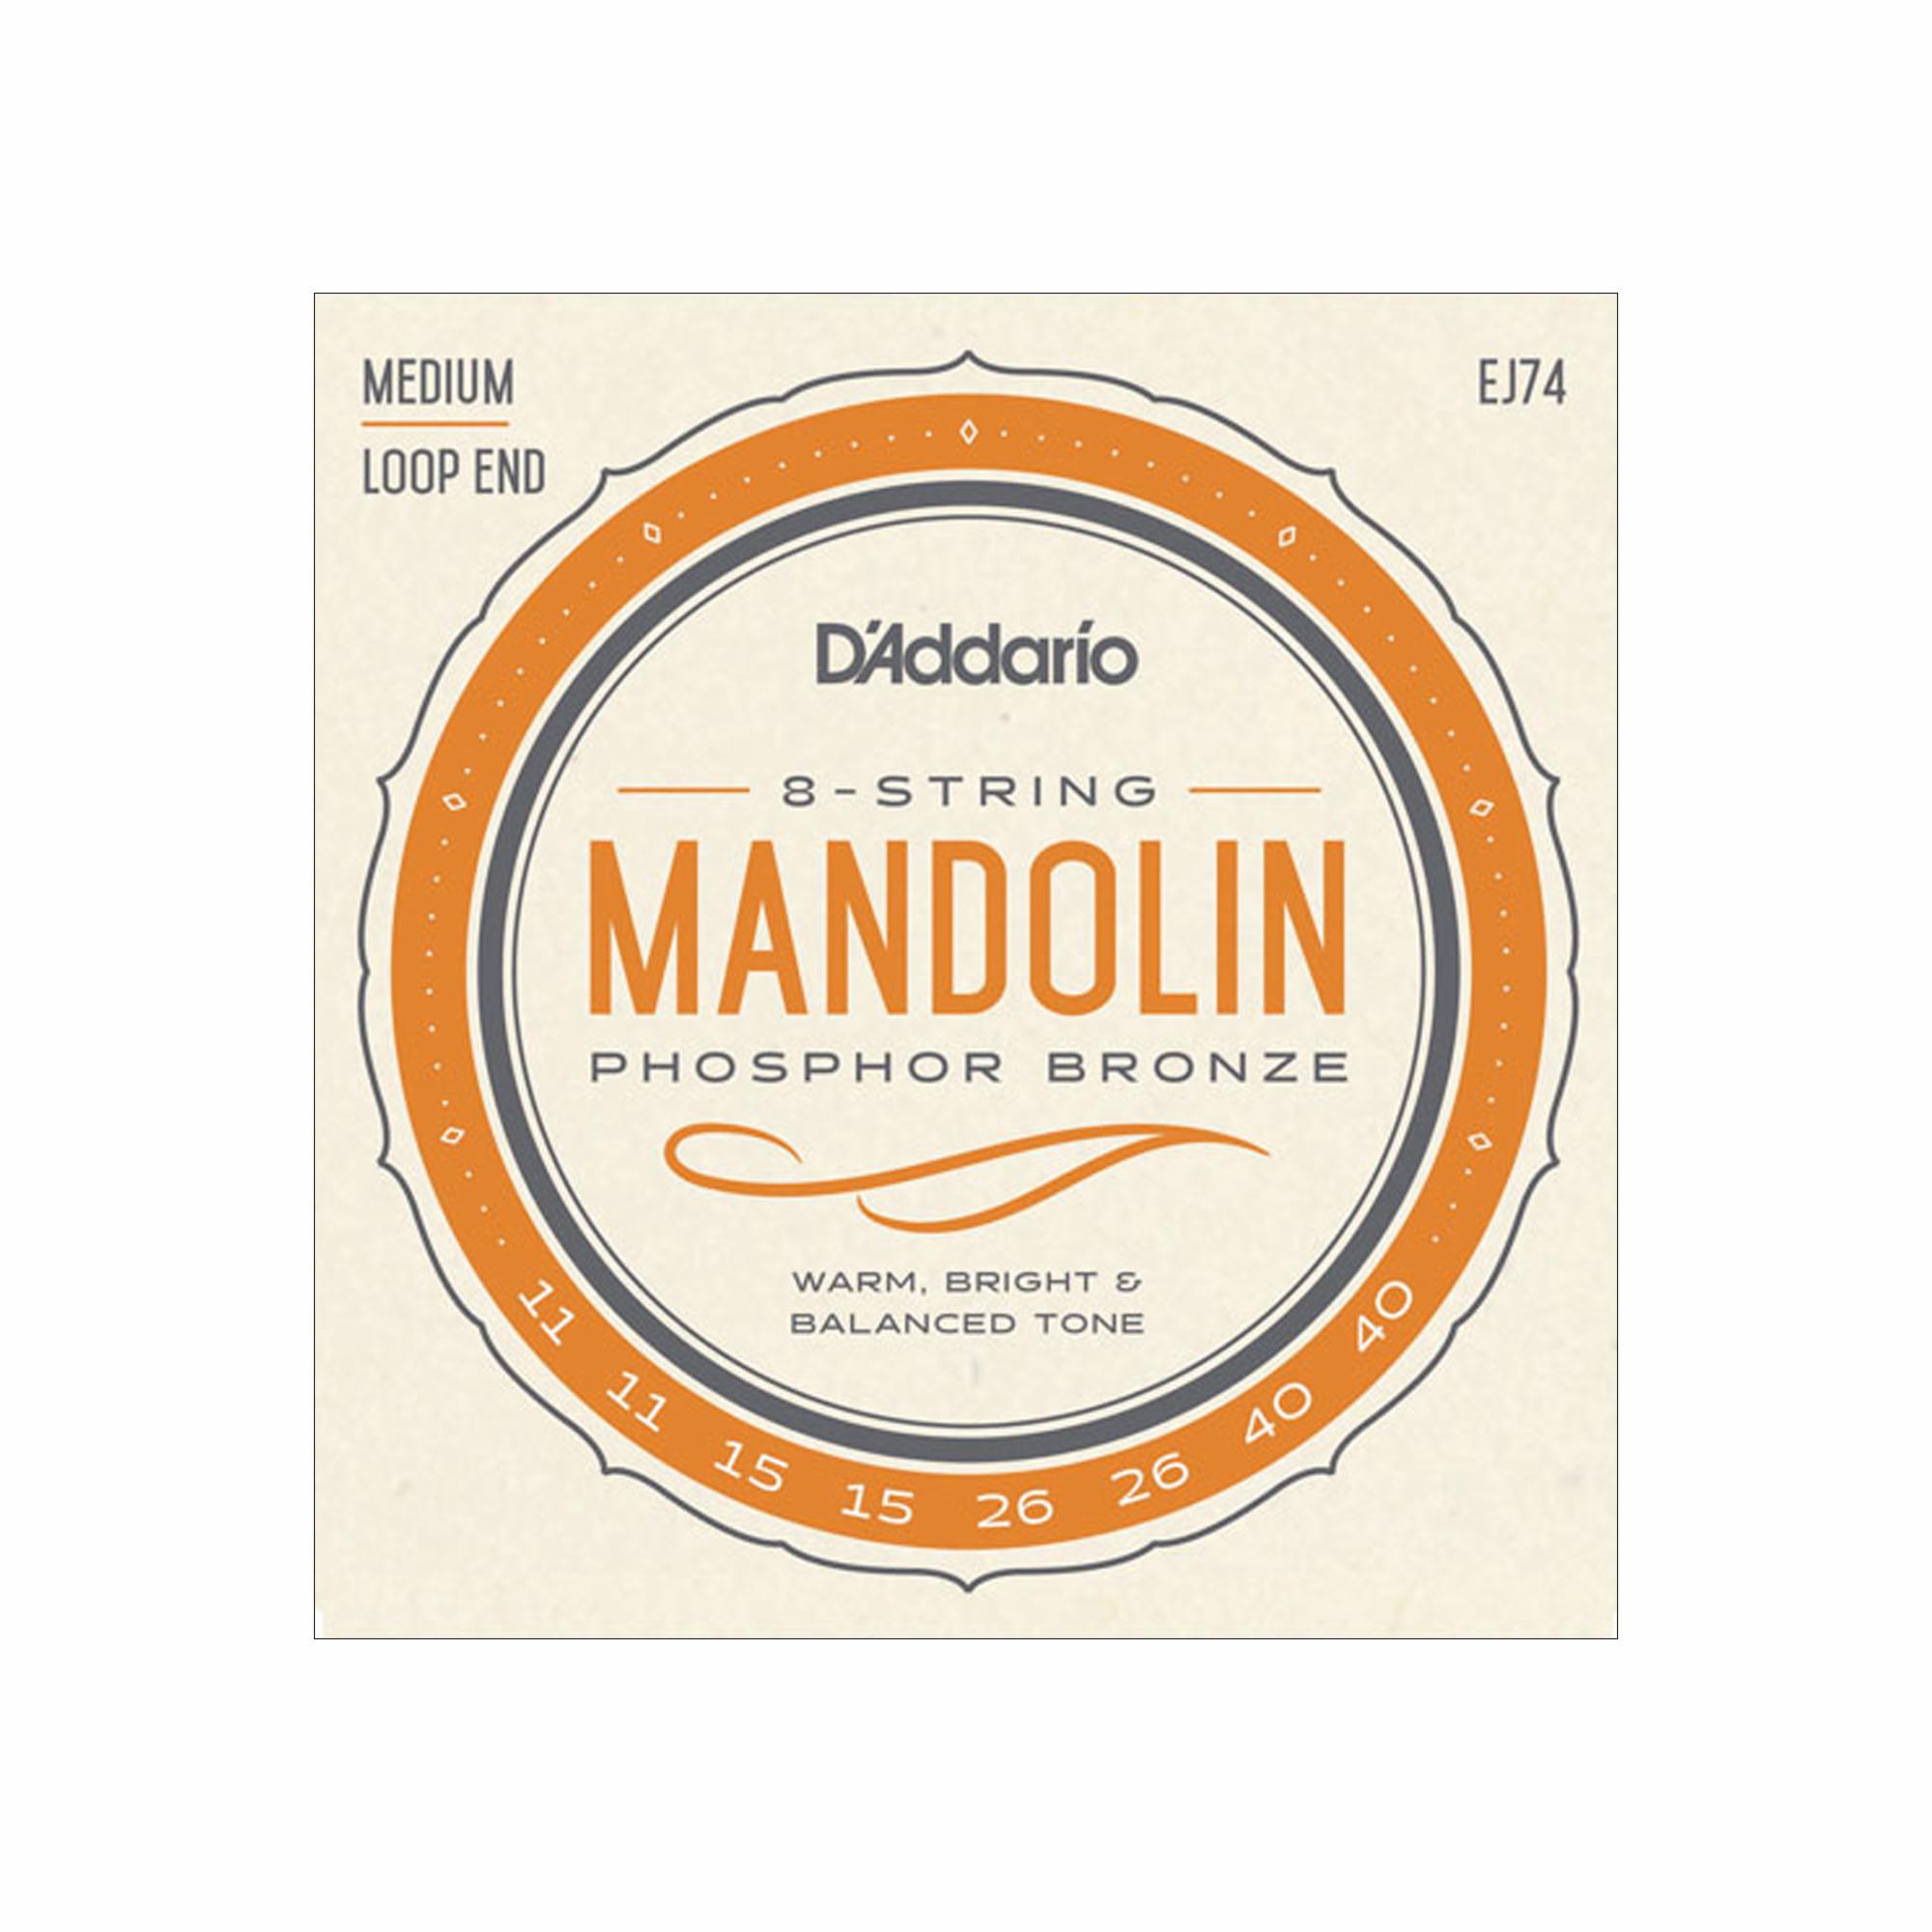 D'Addario Mandolin Folk Strings